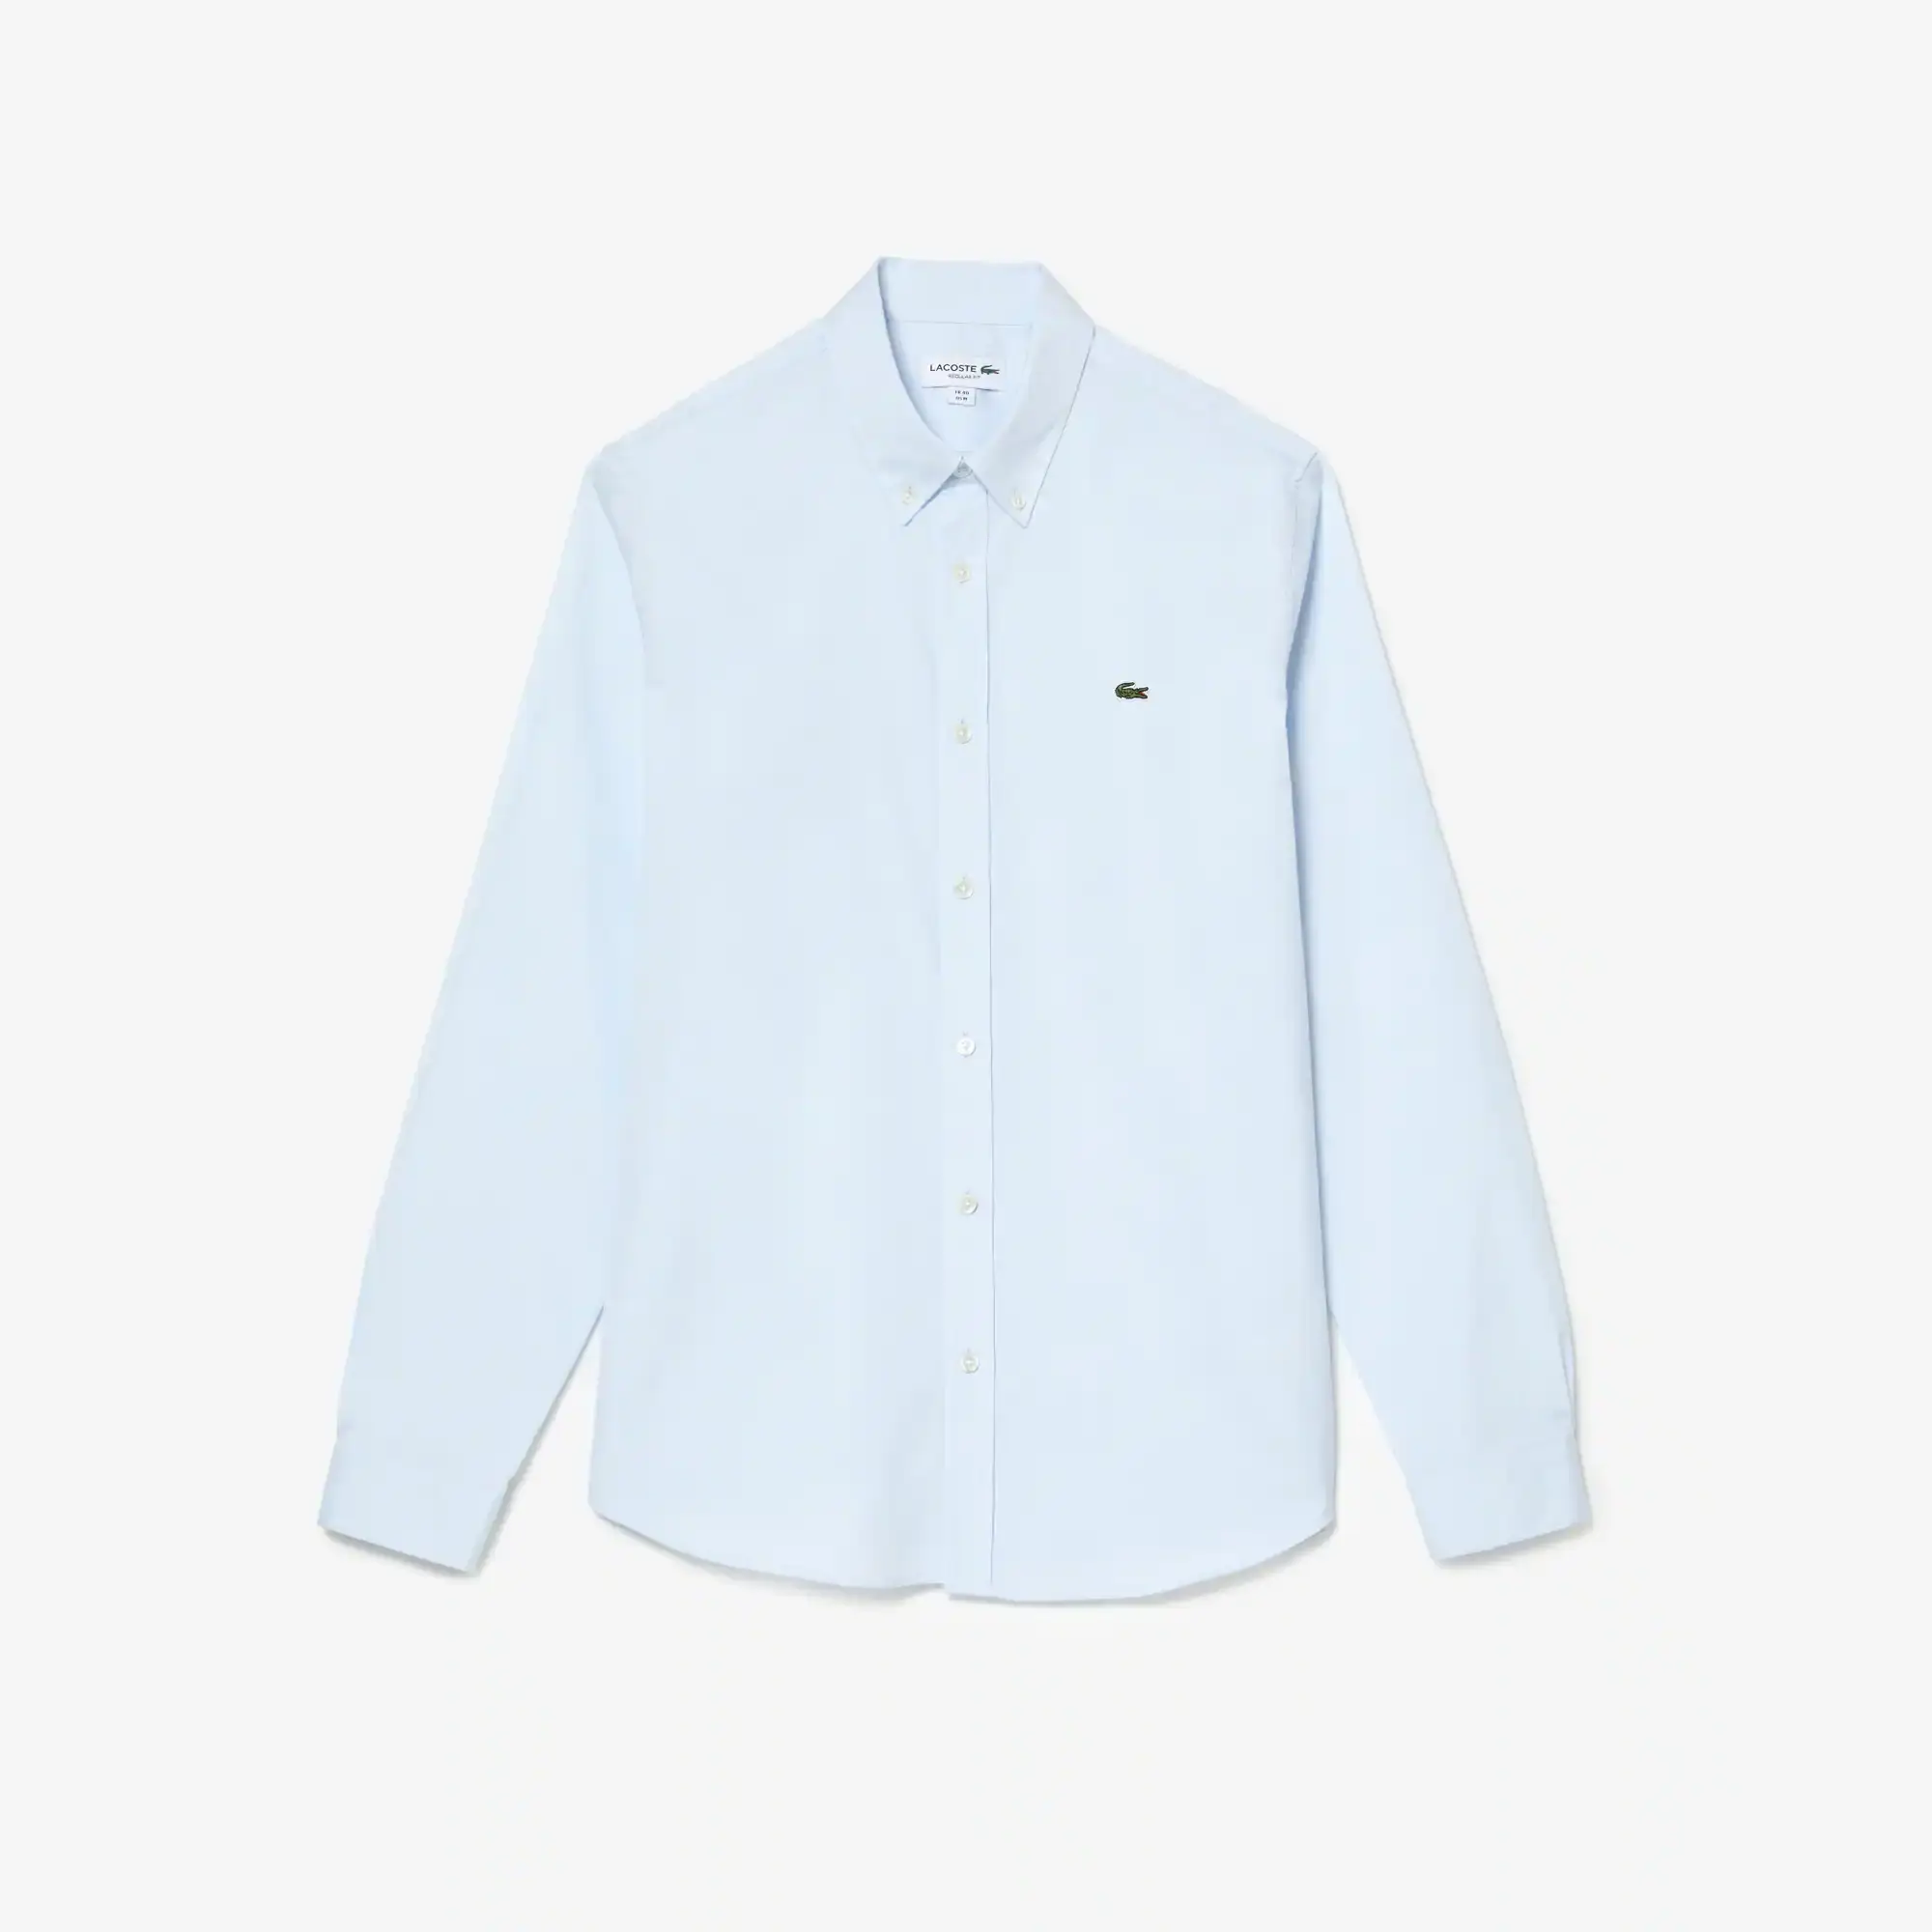 Lacoste Men's Regular Fit Premium Cotton Shirt. 2